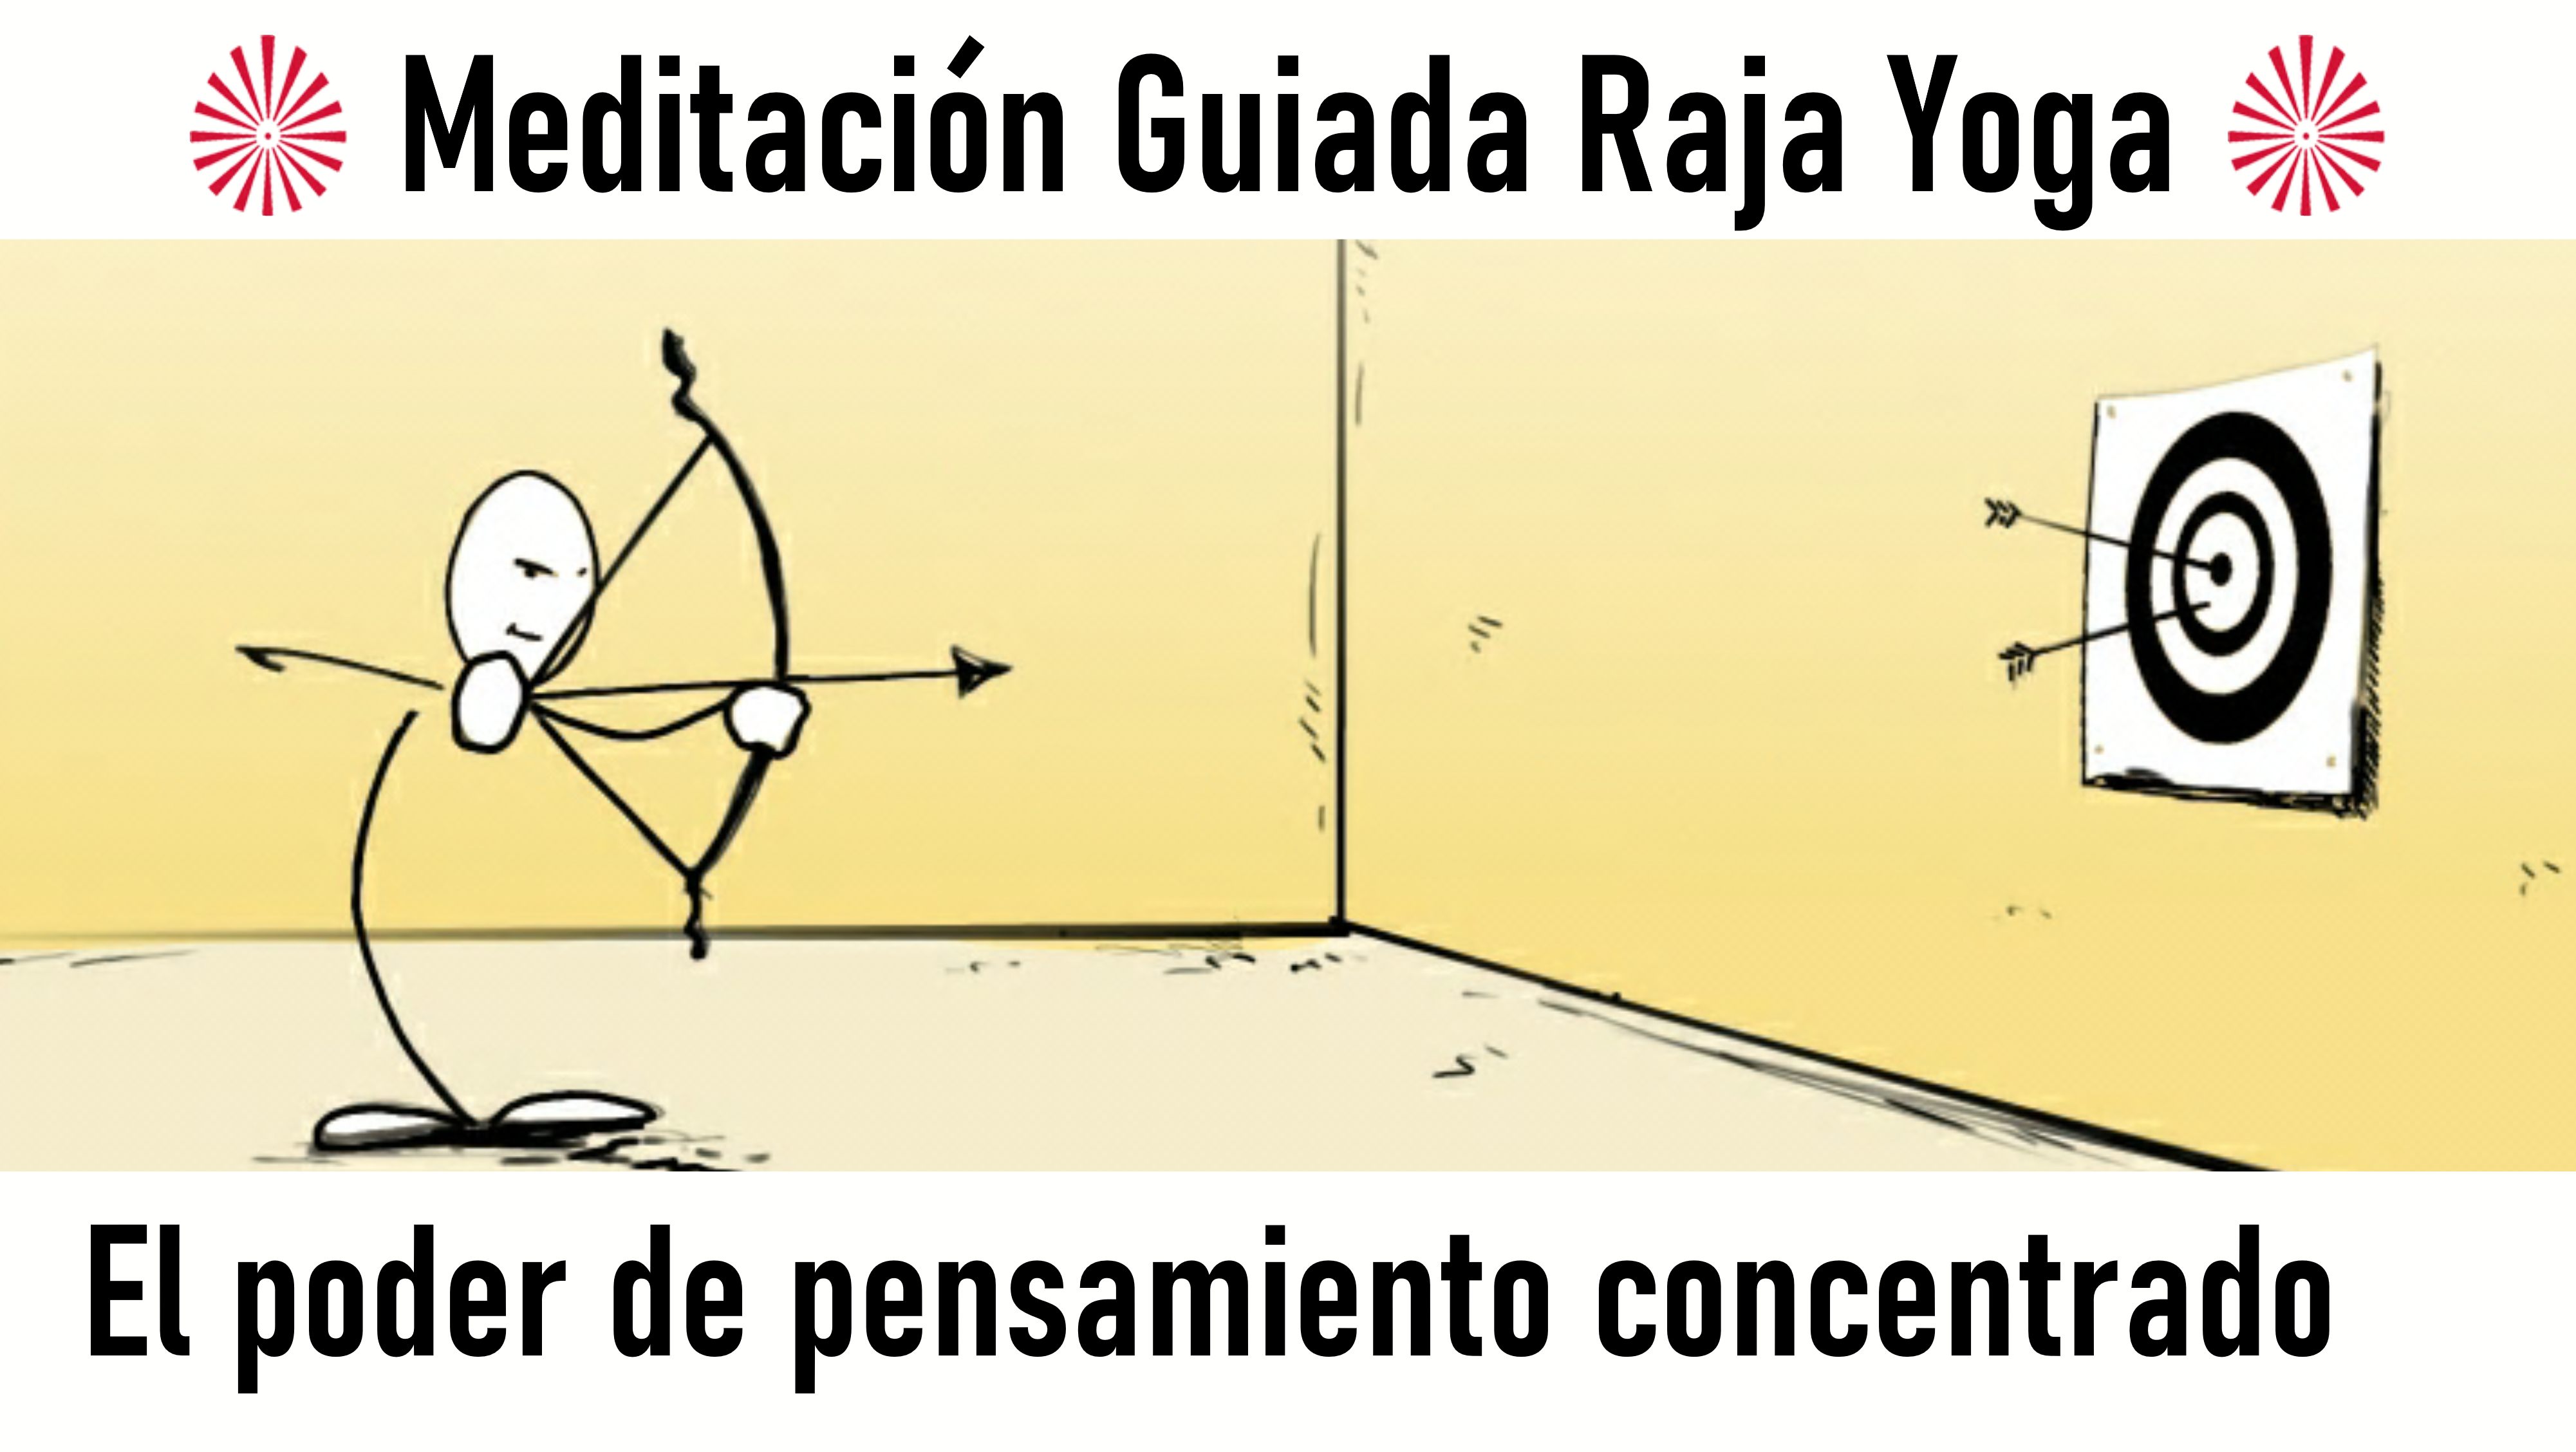 Meditación Raja Yoga:  El poder del pensamiento concentrado (14 Agosto 2020) On-line desde Barcelona